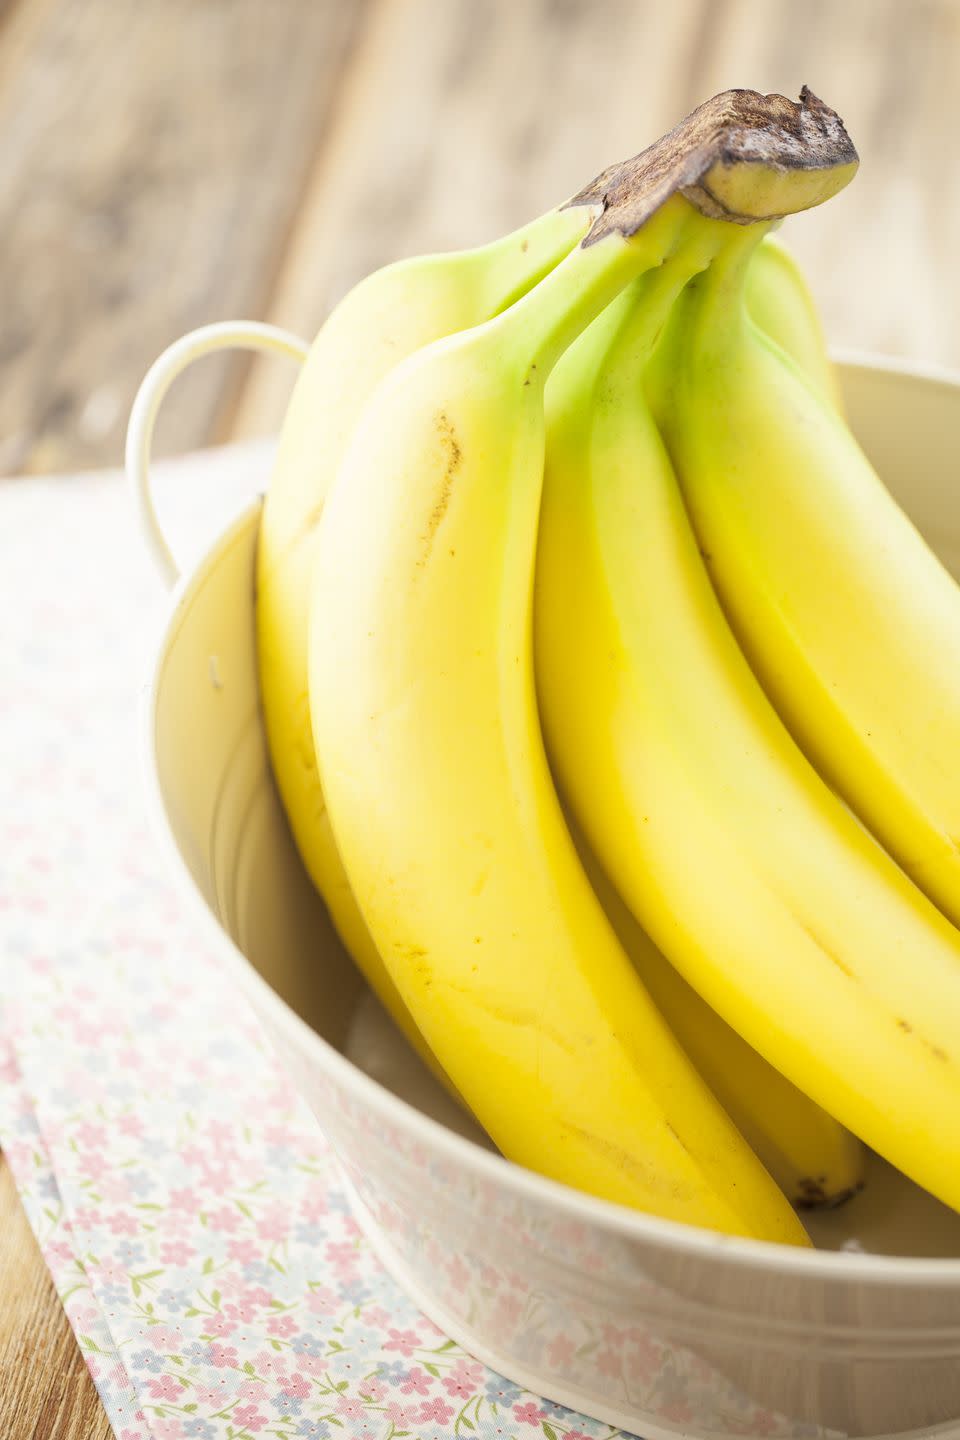 12) Bananas